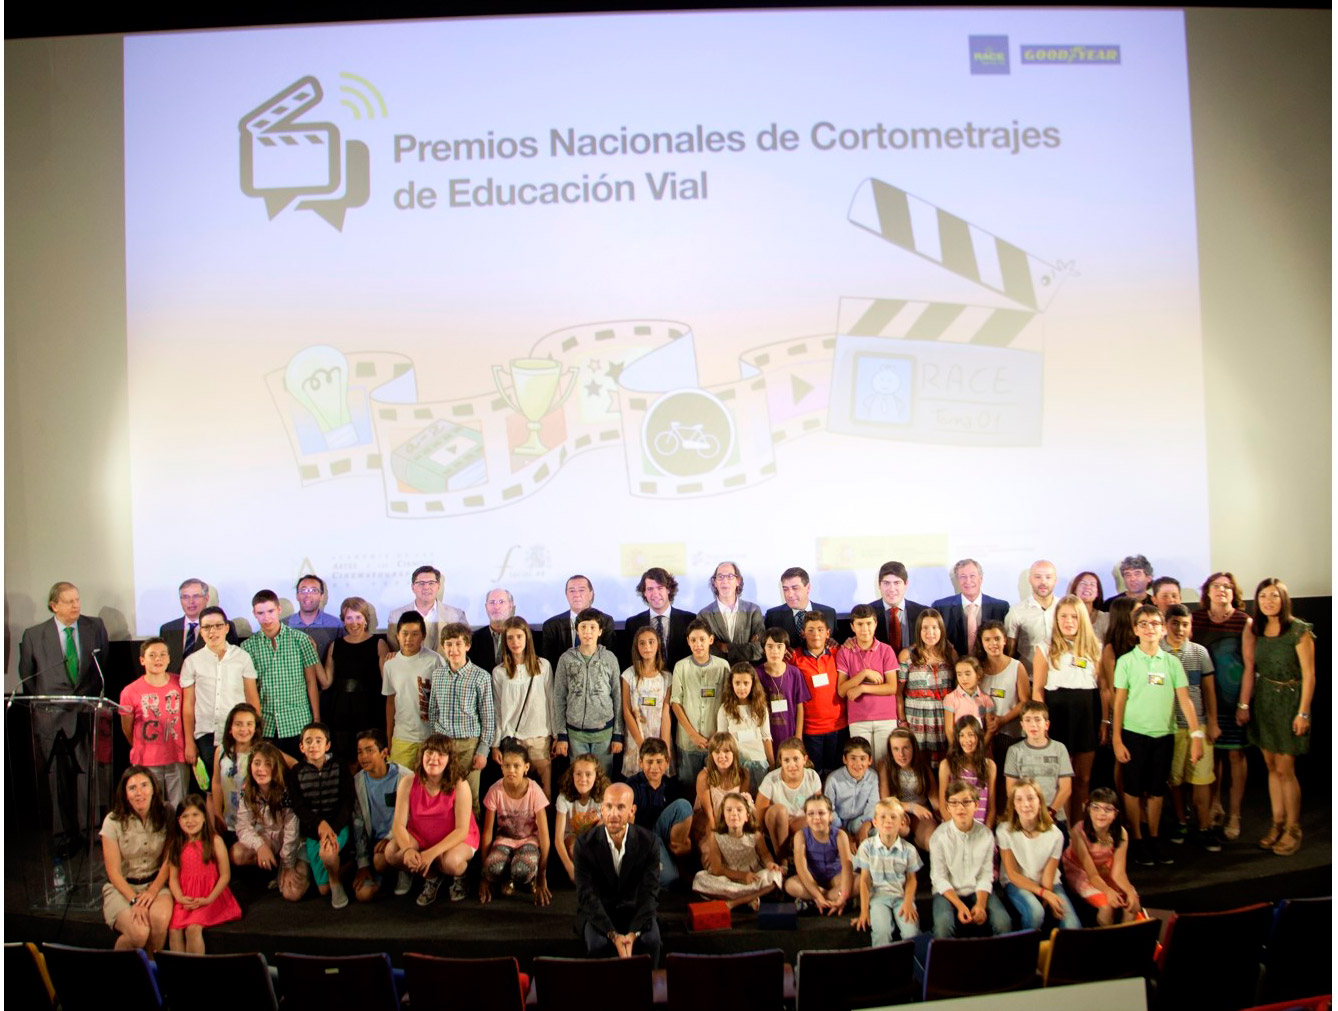 Premios cortometrajes educación vial